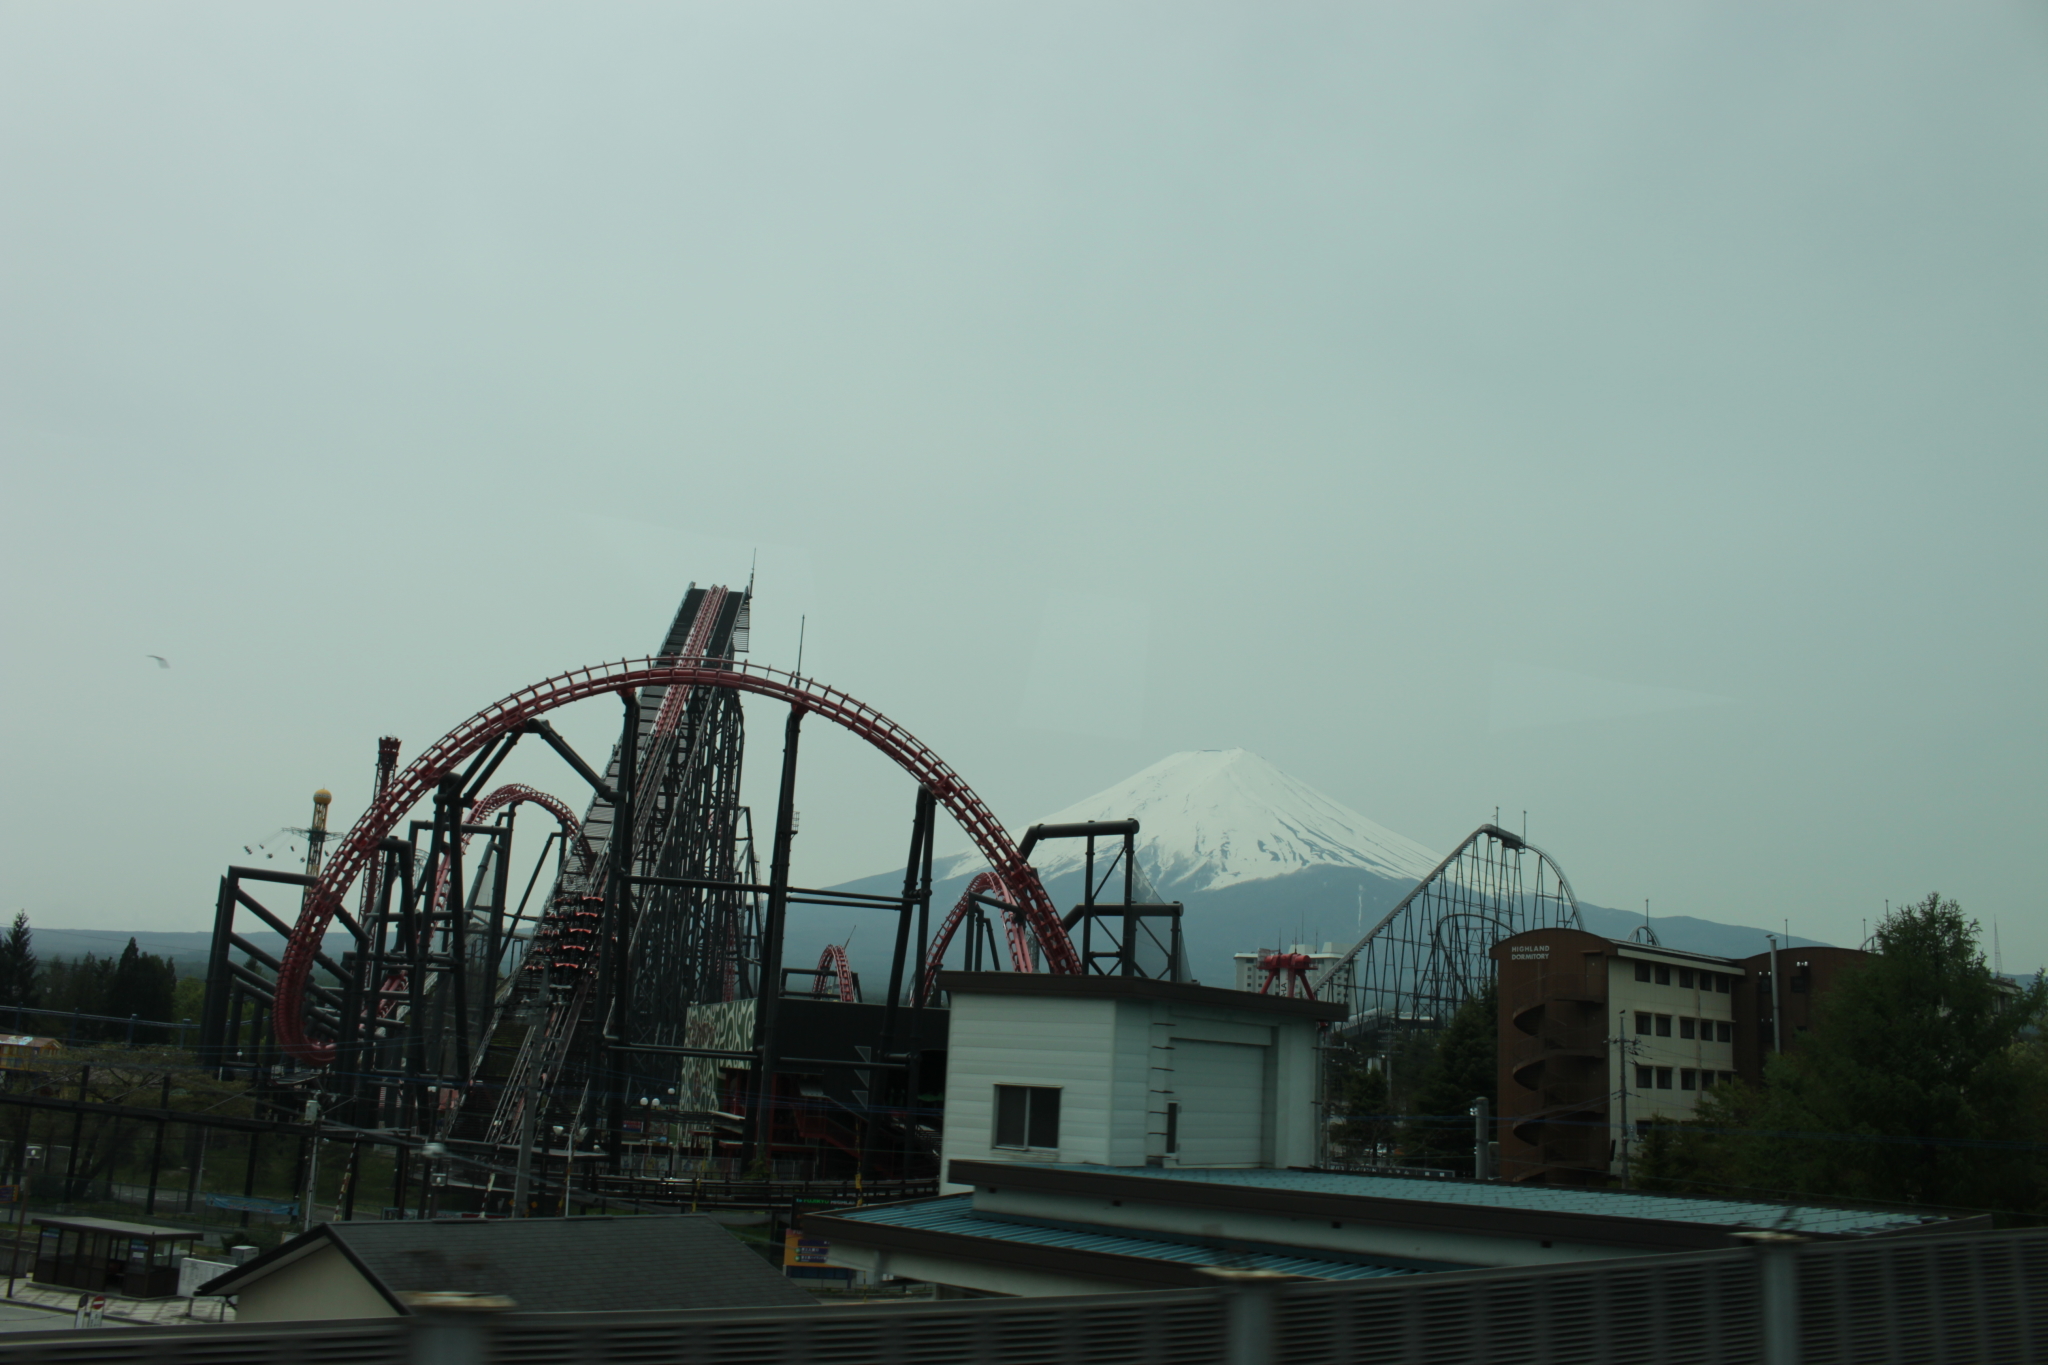 富士急遊樂園